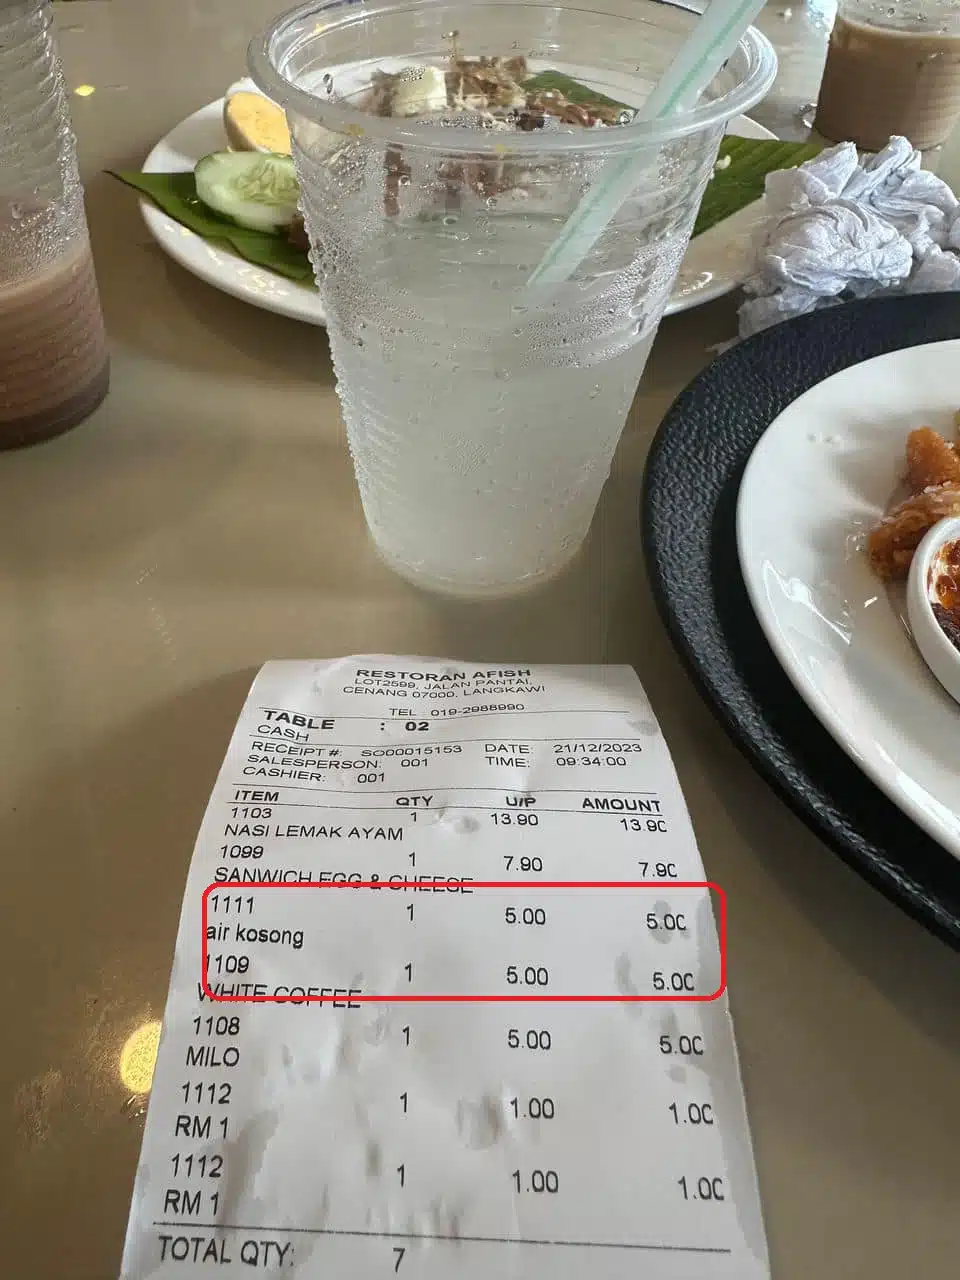 Hangat Isu Air Kosong Harga RM5, Pemilik Restoran Di Langkawi Beri Penjelasan